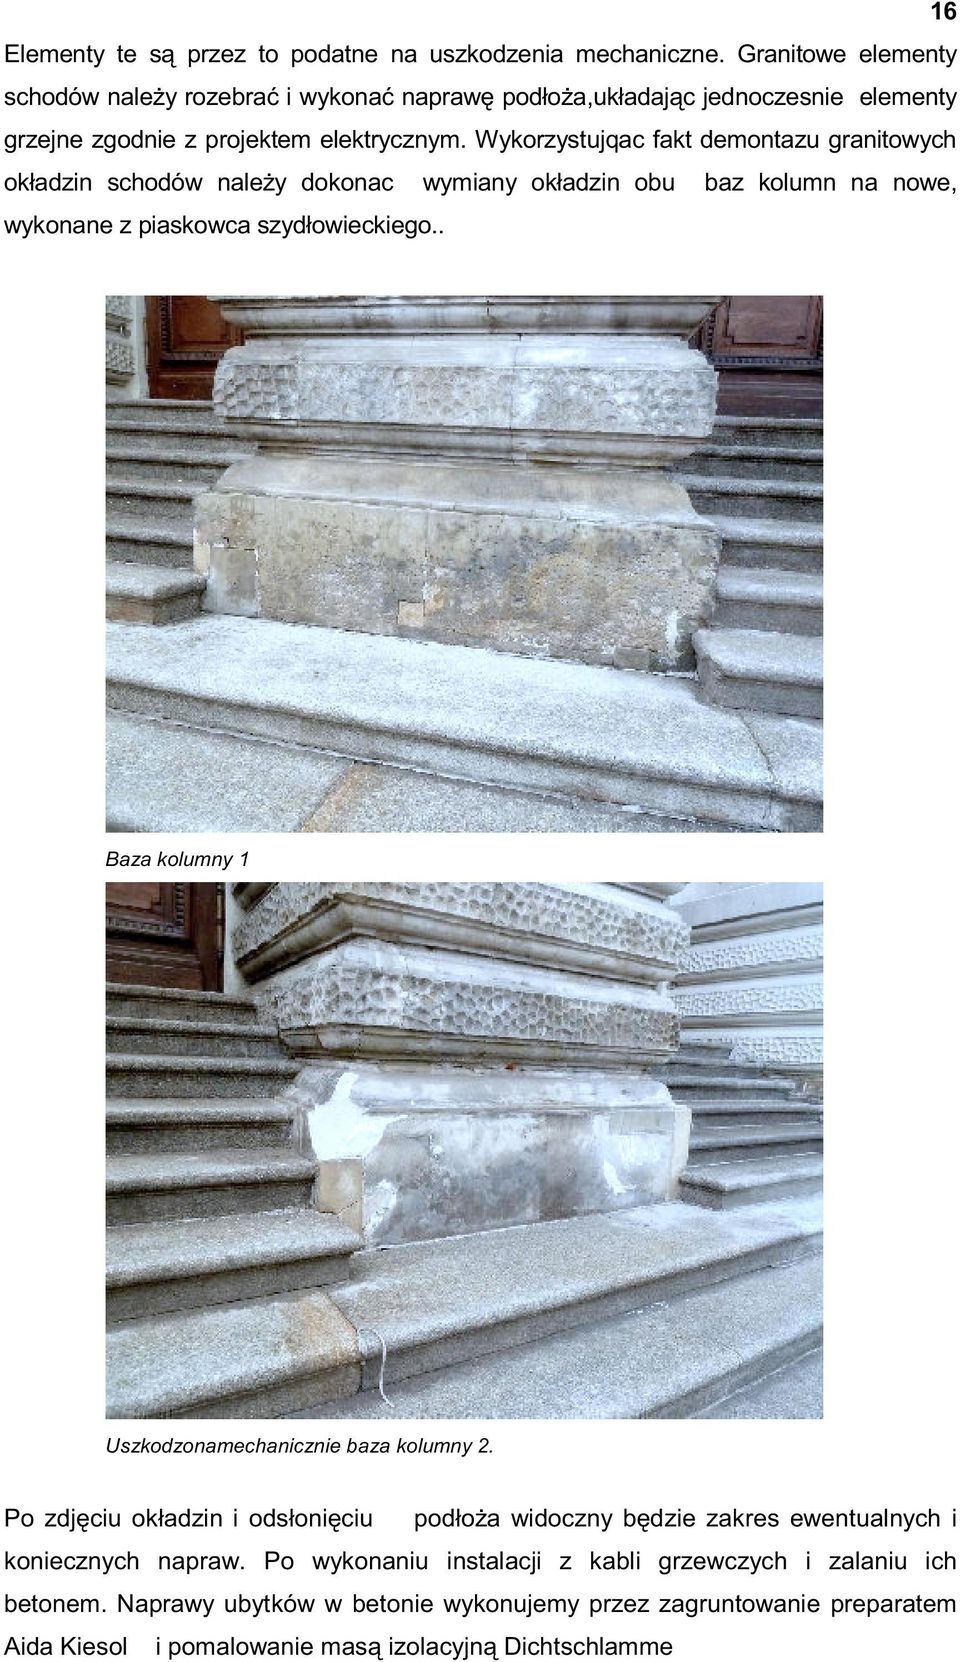 Wykorzystujqac fakt demontazu granitowych okładzin schodów należy dokonac wymiany okładzin obu baz kolumn na nowe, wykonane z piaskowca szydłowieckiego.